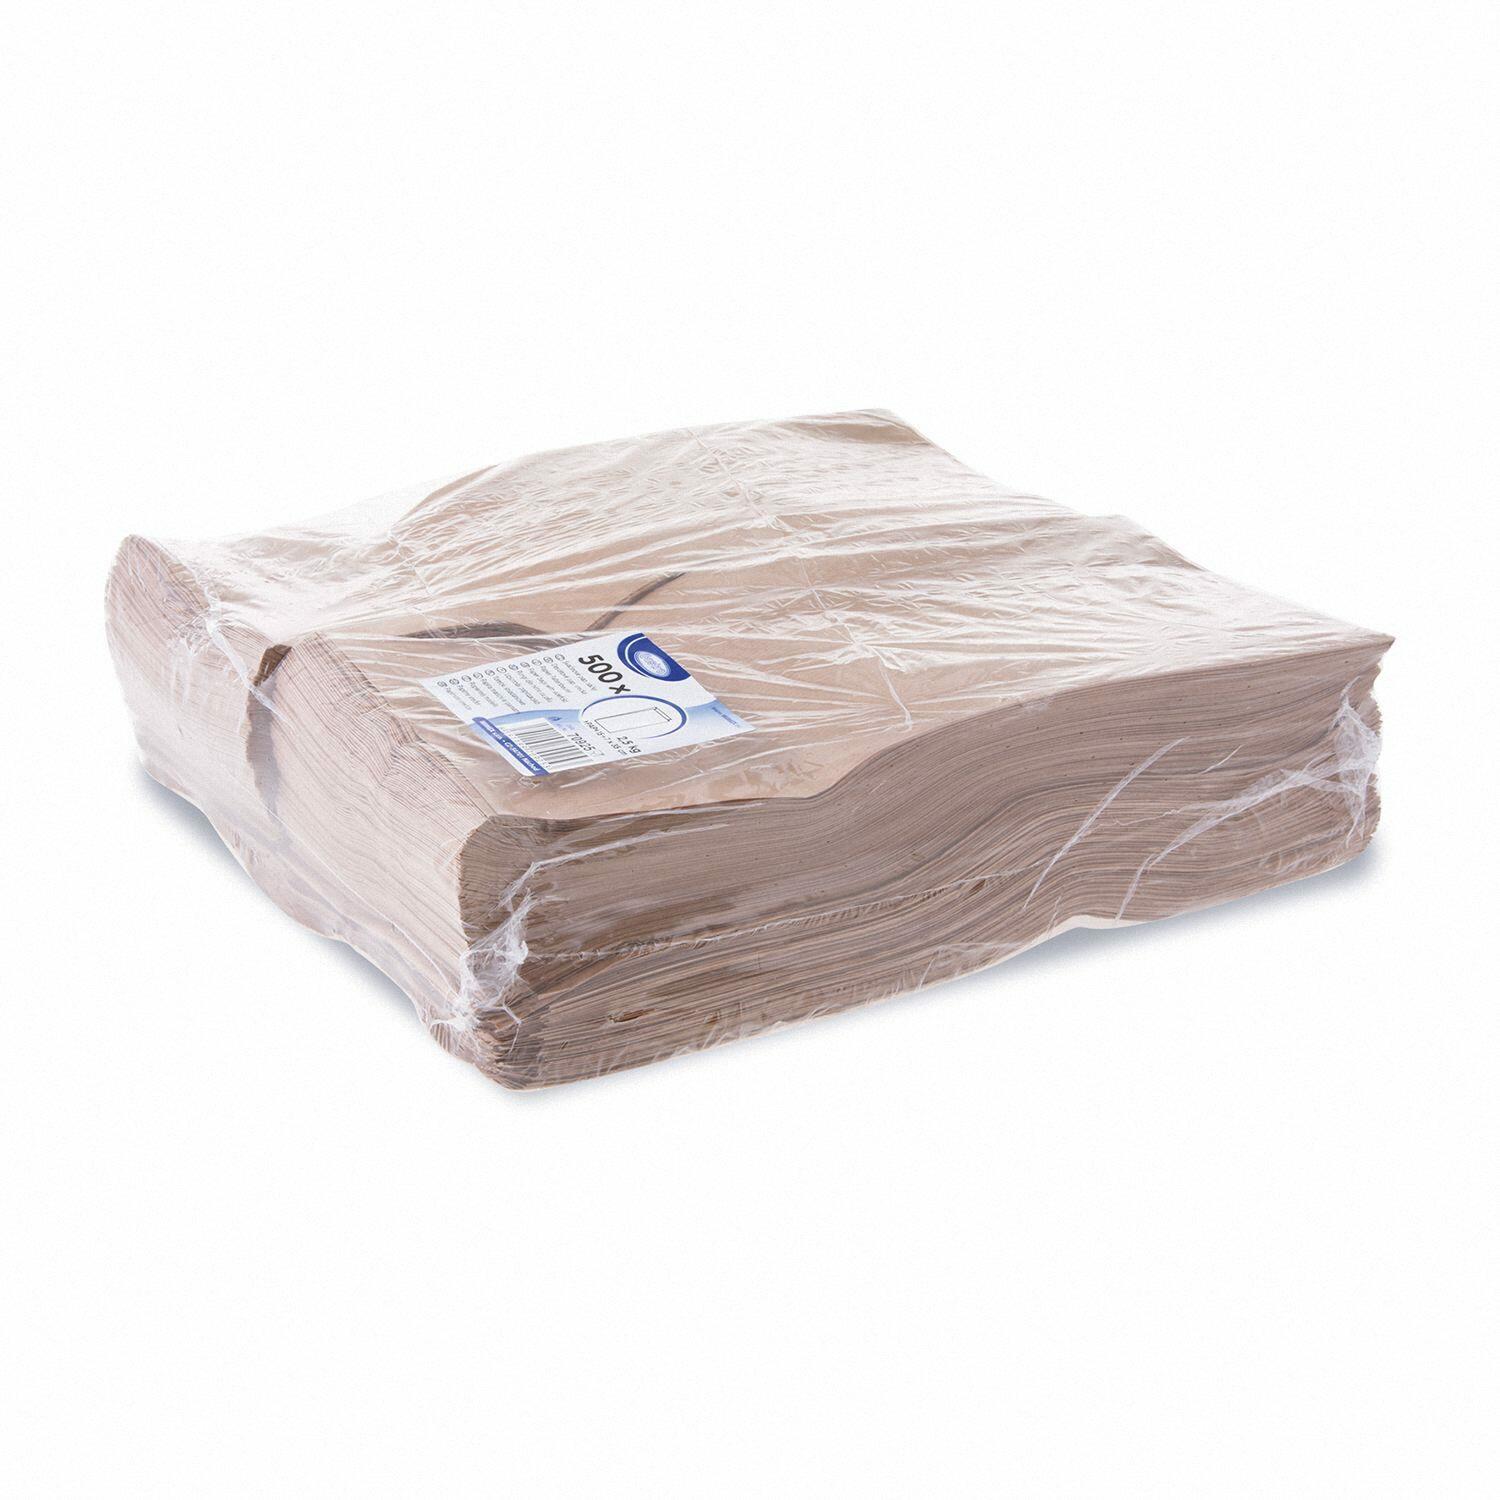 Papierfaltenbeutel Papiertüten braun 15+7 x 35 cm für ca. 2,5kg Inhalt, 500 Stk.